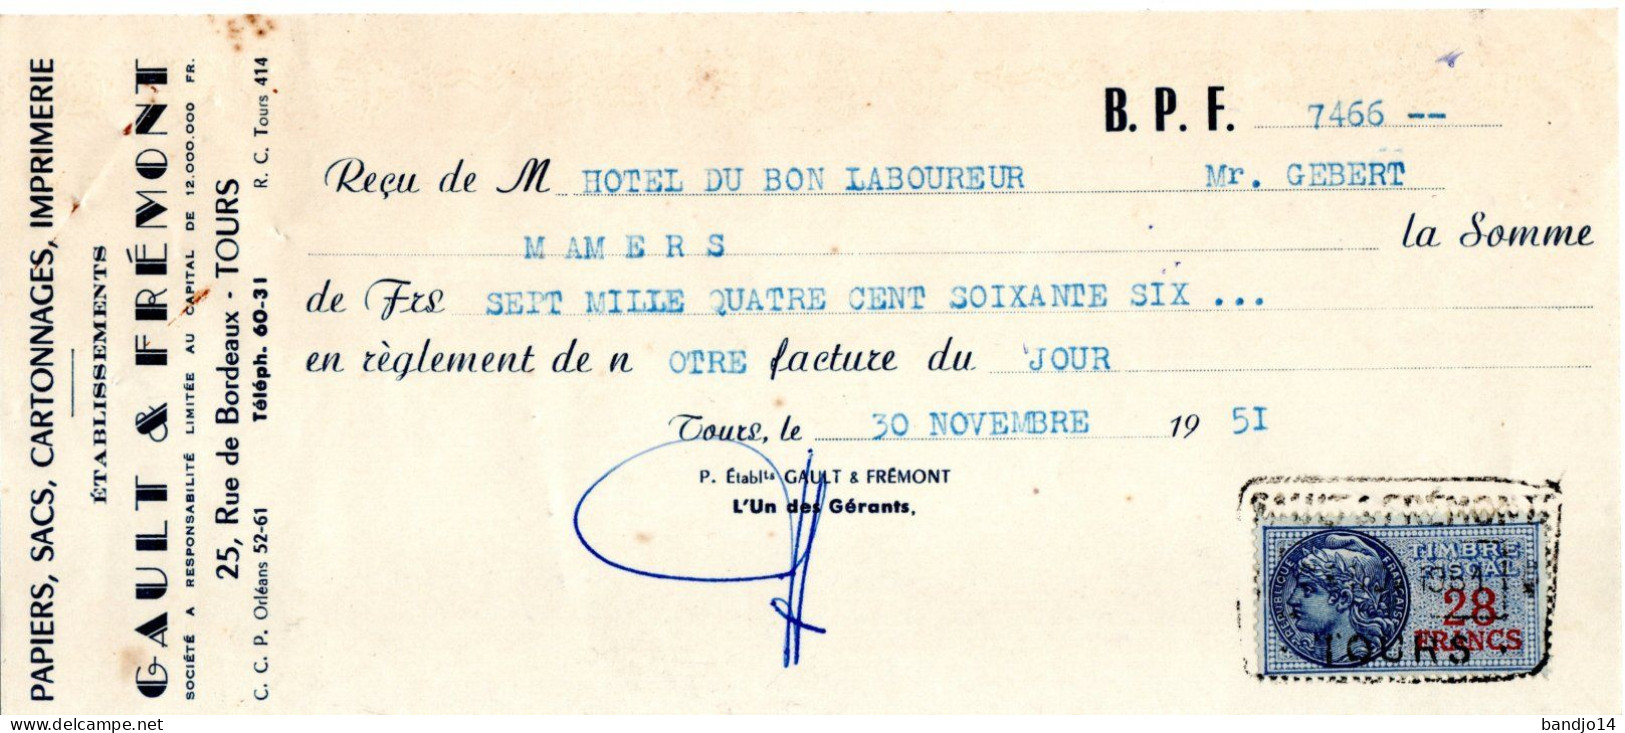 Sarthe - Mamers- hôtel du bon laboureur - ensemble de documents années 1940 - 1950